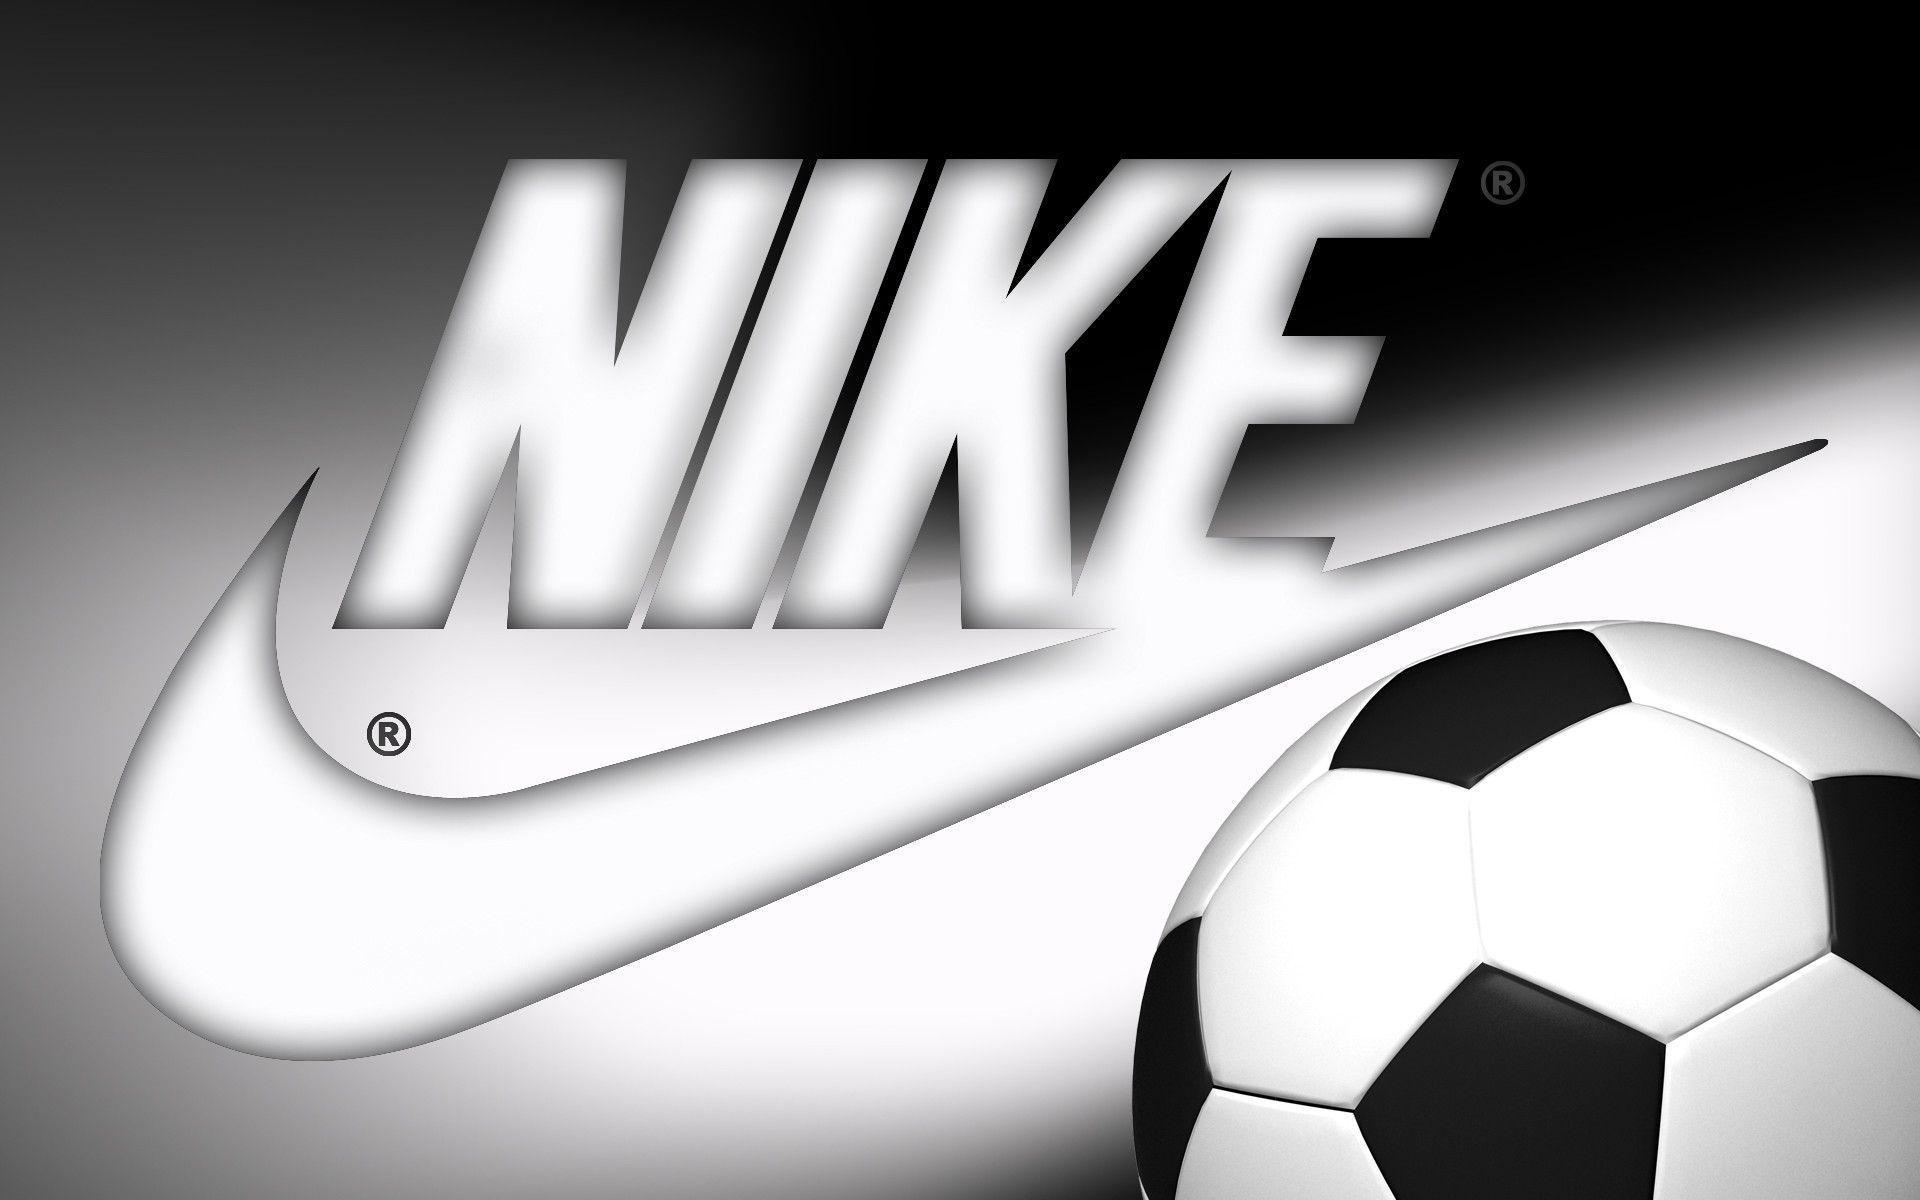 Izlishk Obzhalvane Bobina Soccer Wallpaper Nike V Dejstvitelnost Chist Konvergenciya